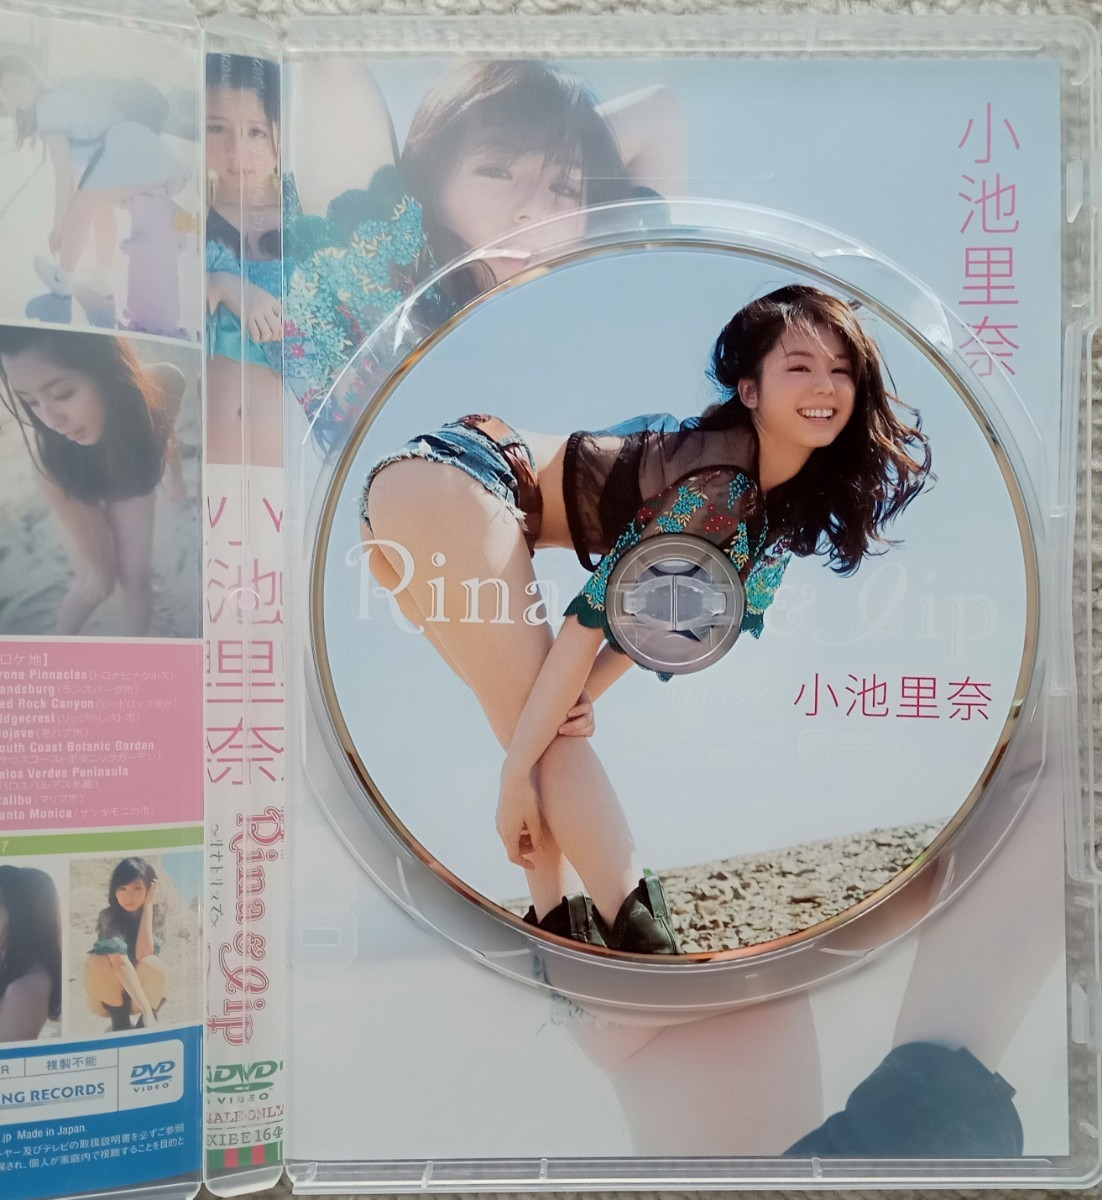 小池里奈 Rina&lip DVD